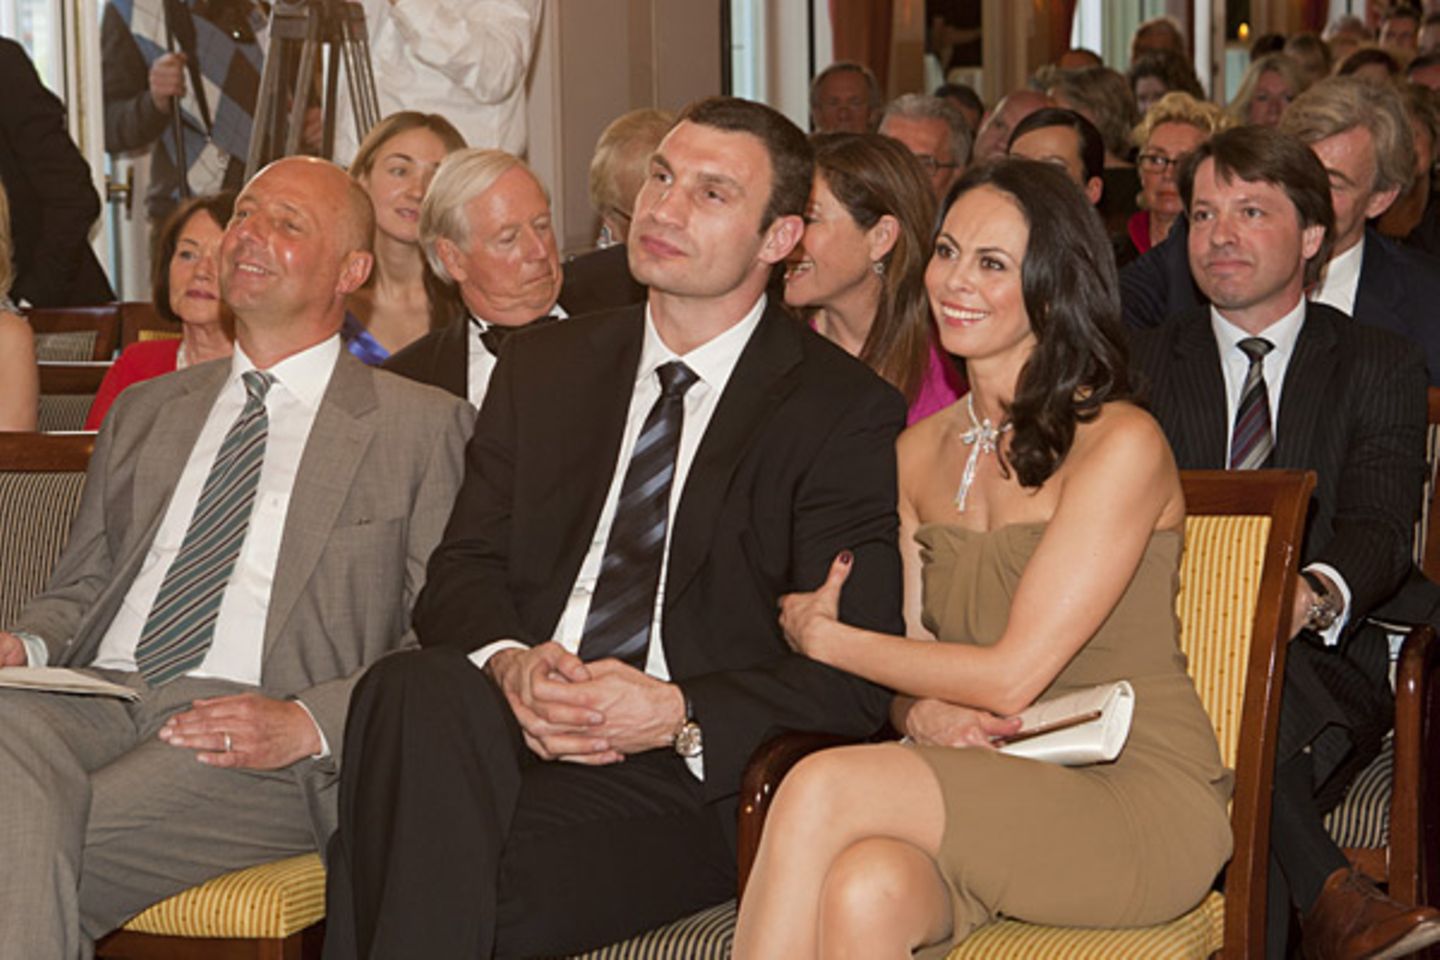 Das GALA-Paar des Jahres 2011, Dr. Vitali Klitschko und seine Frau Natalia, lauscht neben Peter Lewandowski gespannt den Worten